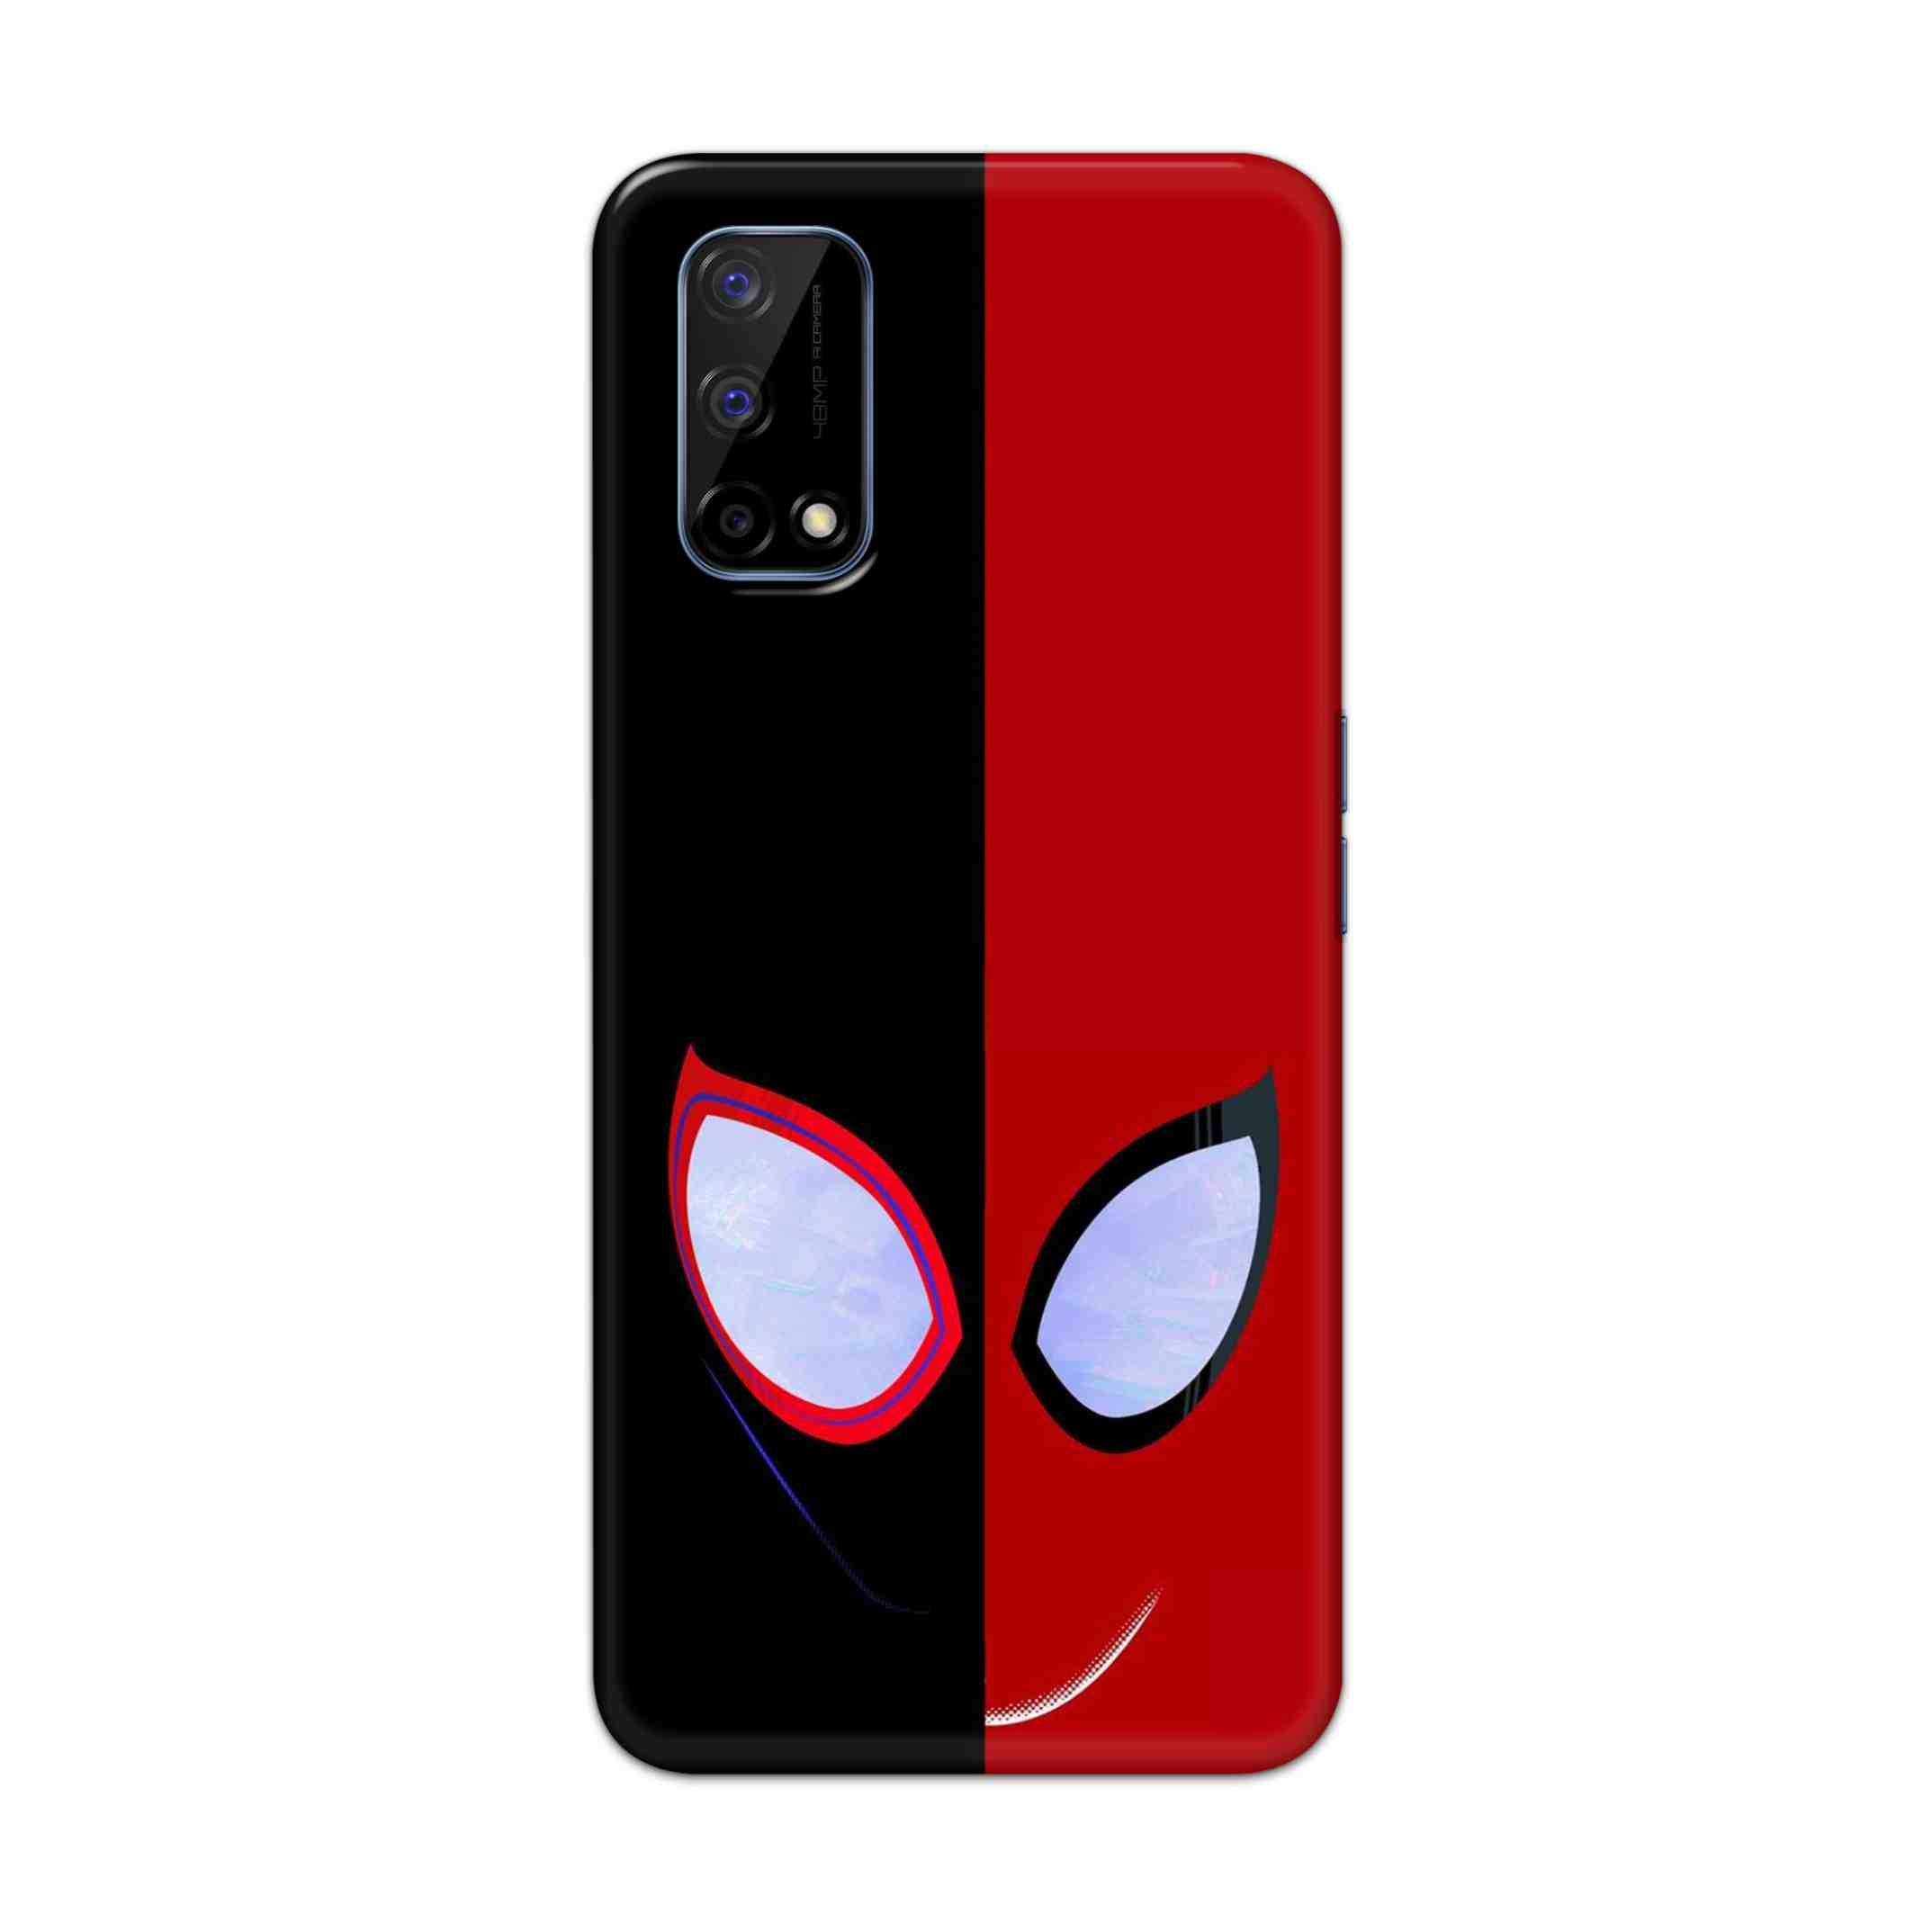 Buy Venom Vs Spiderman Hard Back Mobile Phone Case Cover For Realme Narzo 30 Pro Online